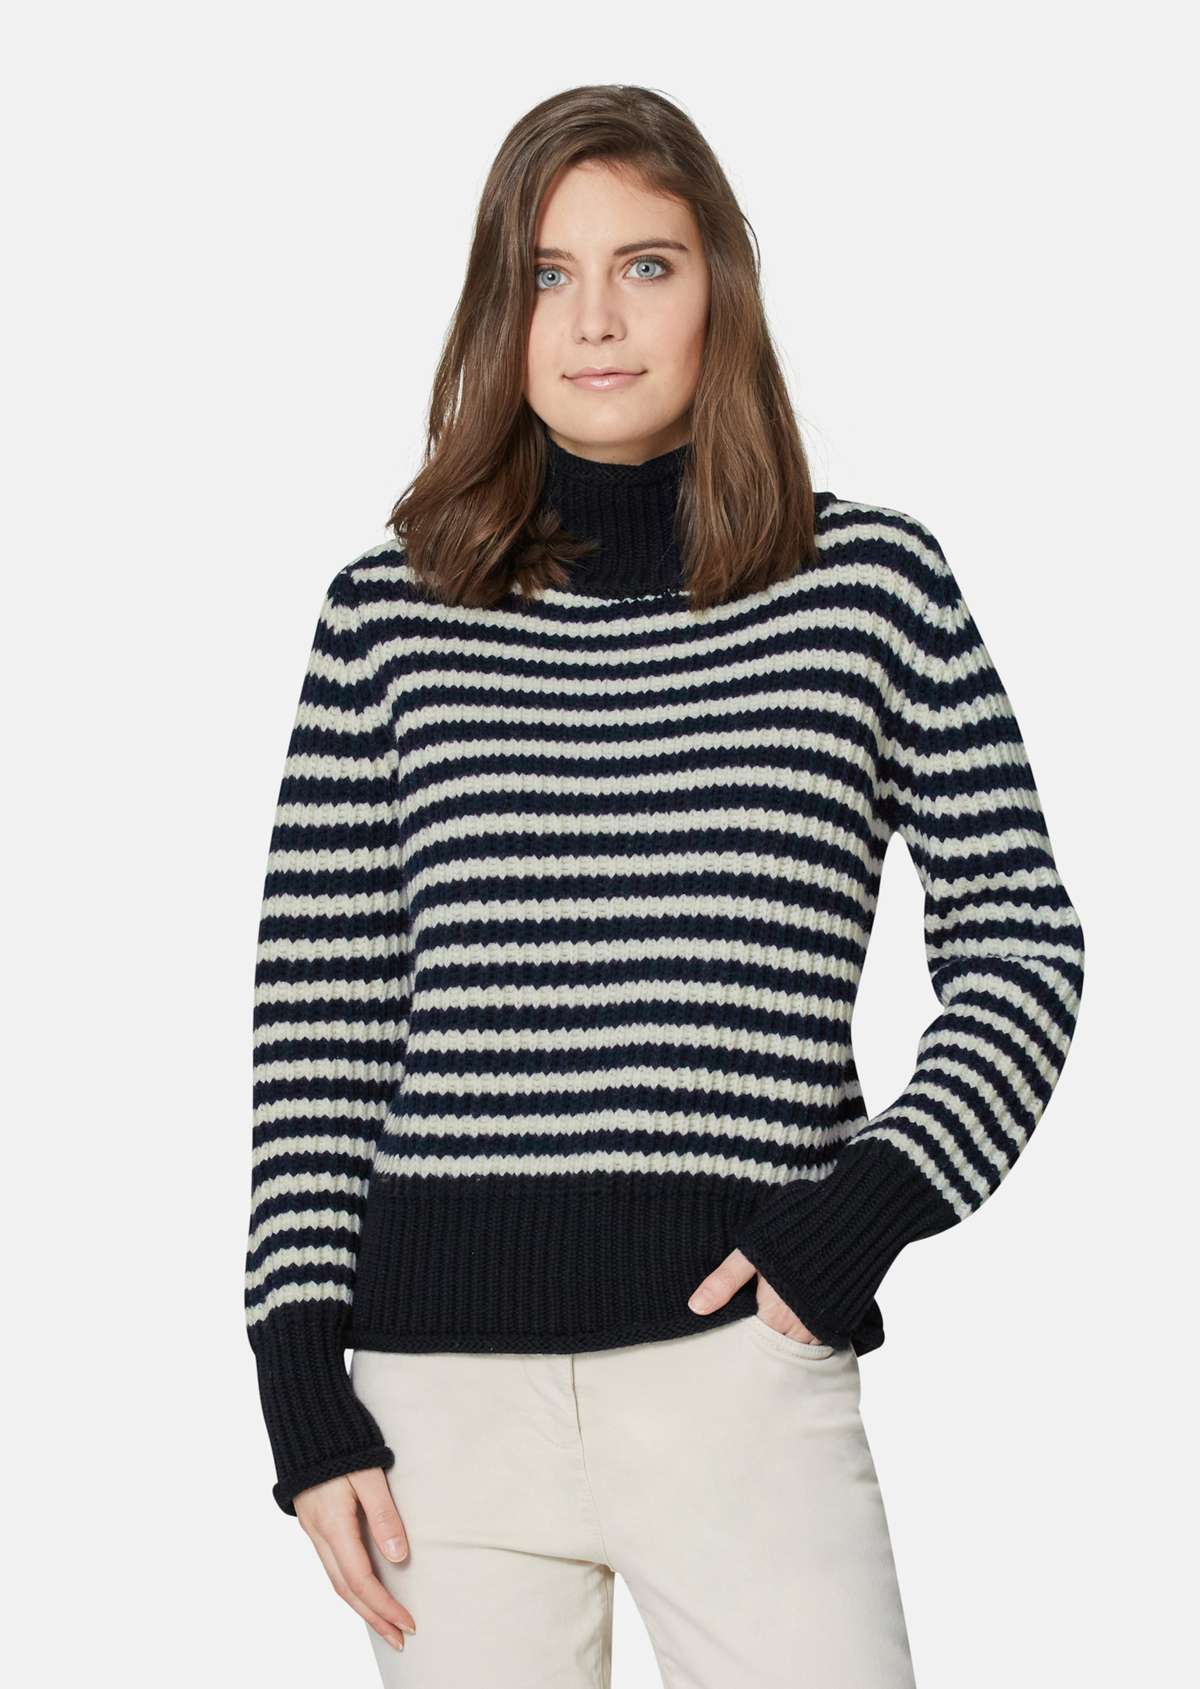 Мягкий свитер из натуральной шерсти со стильными полосками.